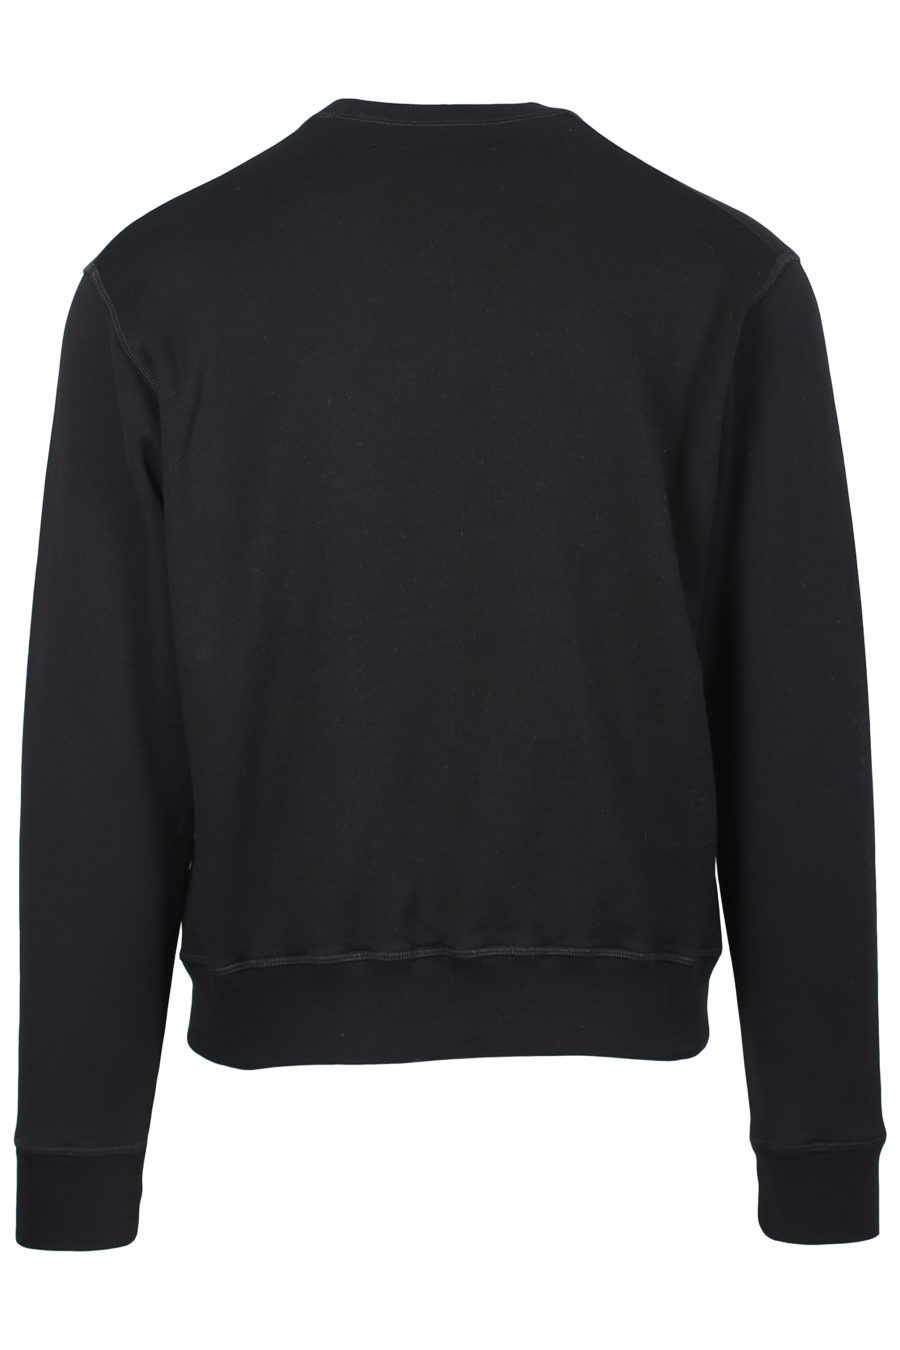 Schwarzes Sweatshirt mit vertikalem "Icon"-Logo - IMG 2264